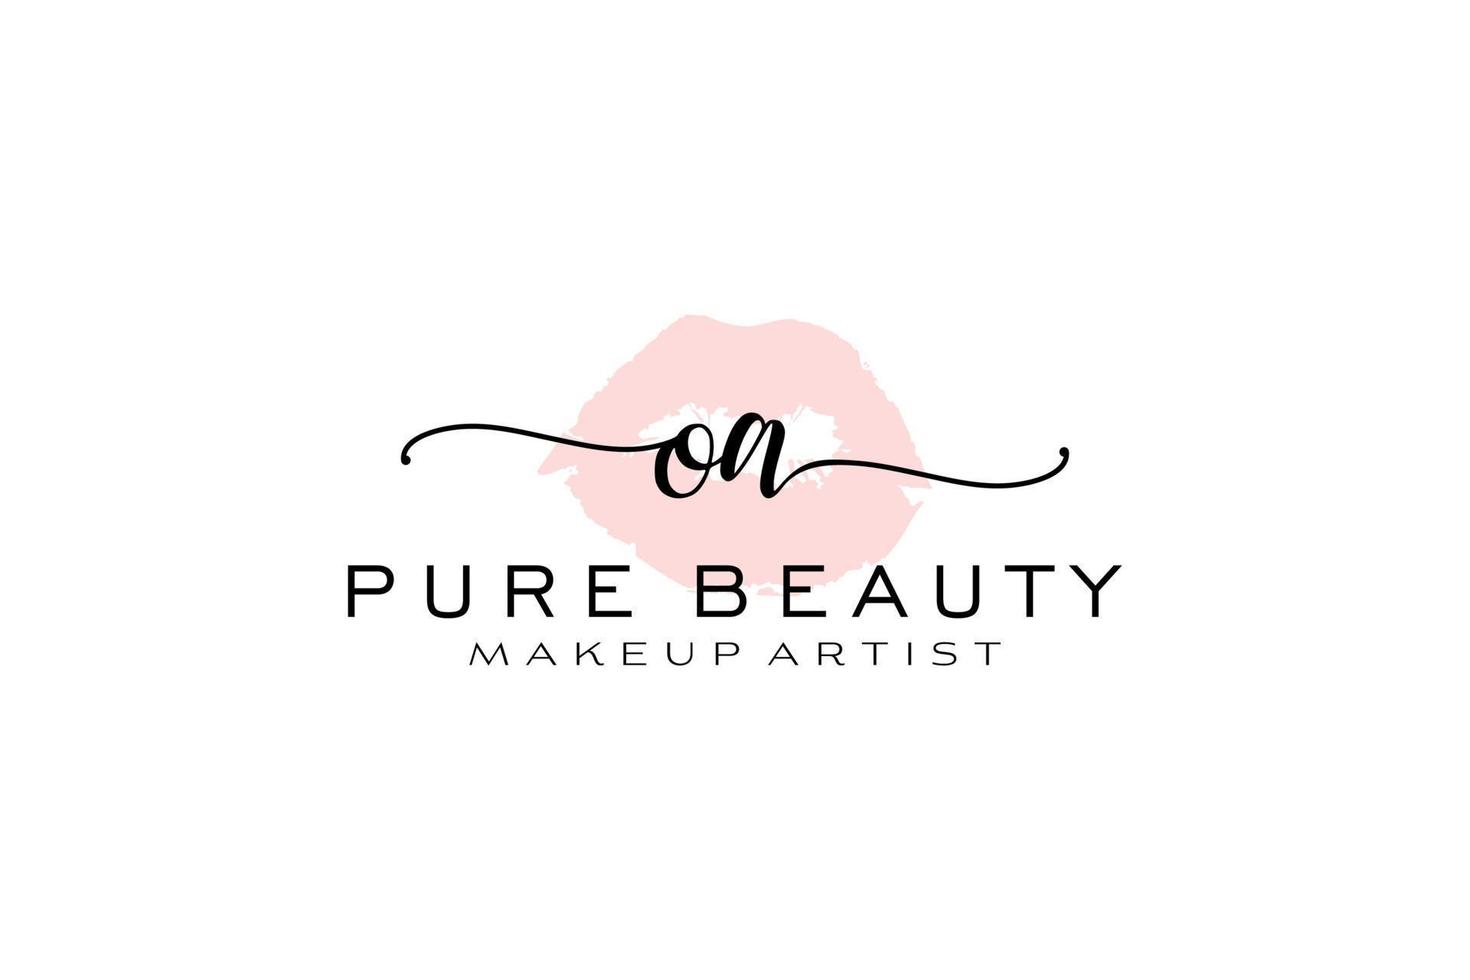 création initiale de logo préfabriqué pour les lèvres aquarelle oa, logo pour la marque d'entreprise de maquilleur, création de logo de boutique de beauté blush, logo de calligraphie avec modèle créatif. vecteur